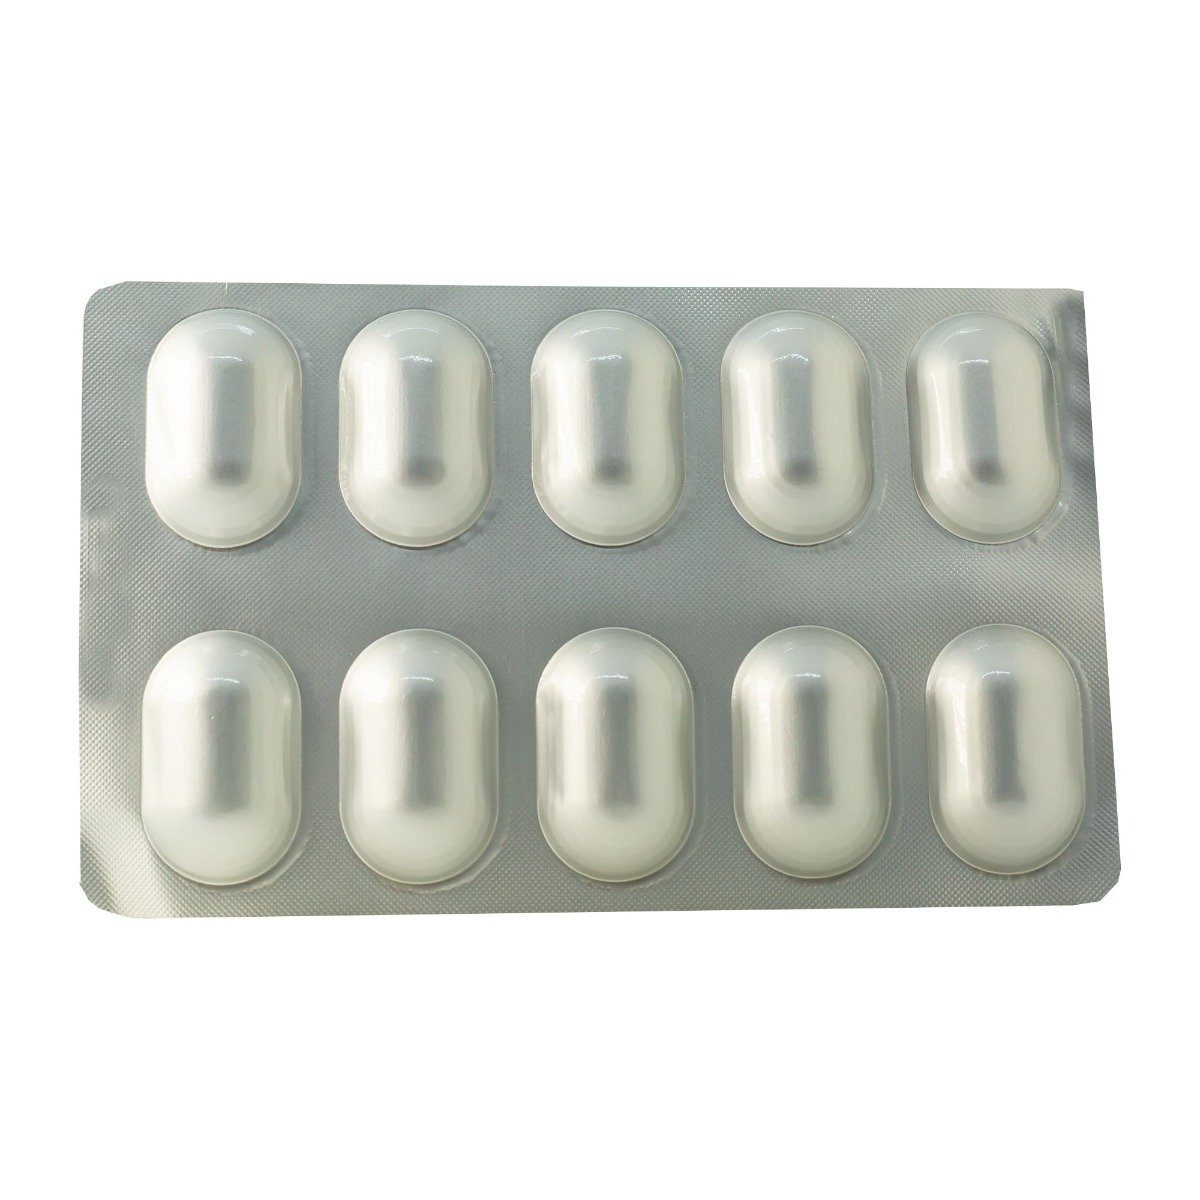 Gliptus Plus 50 mg-1000 mg - 30 Tablets - Bloom Pharmacy